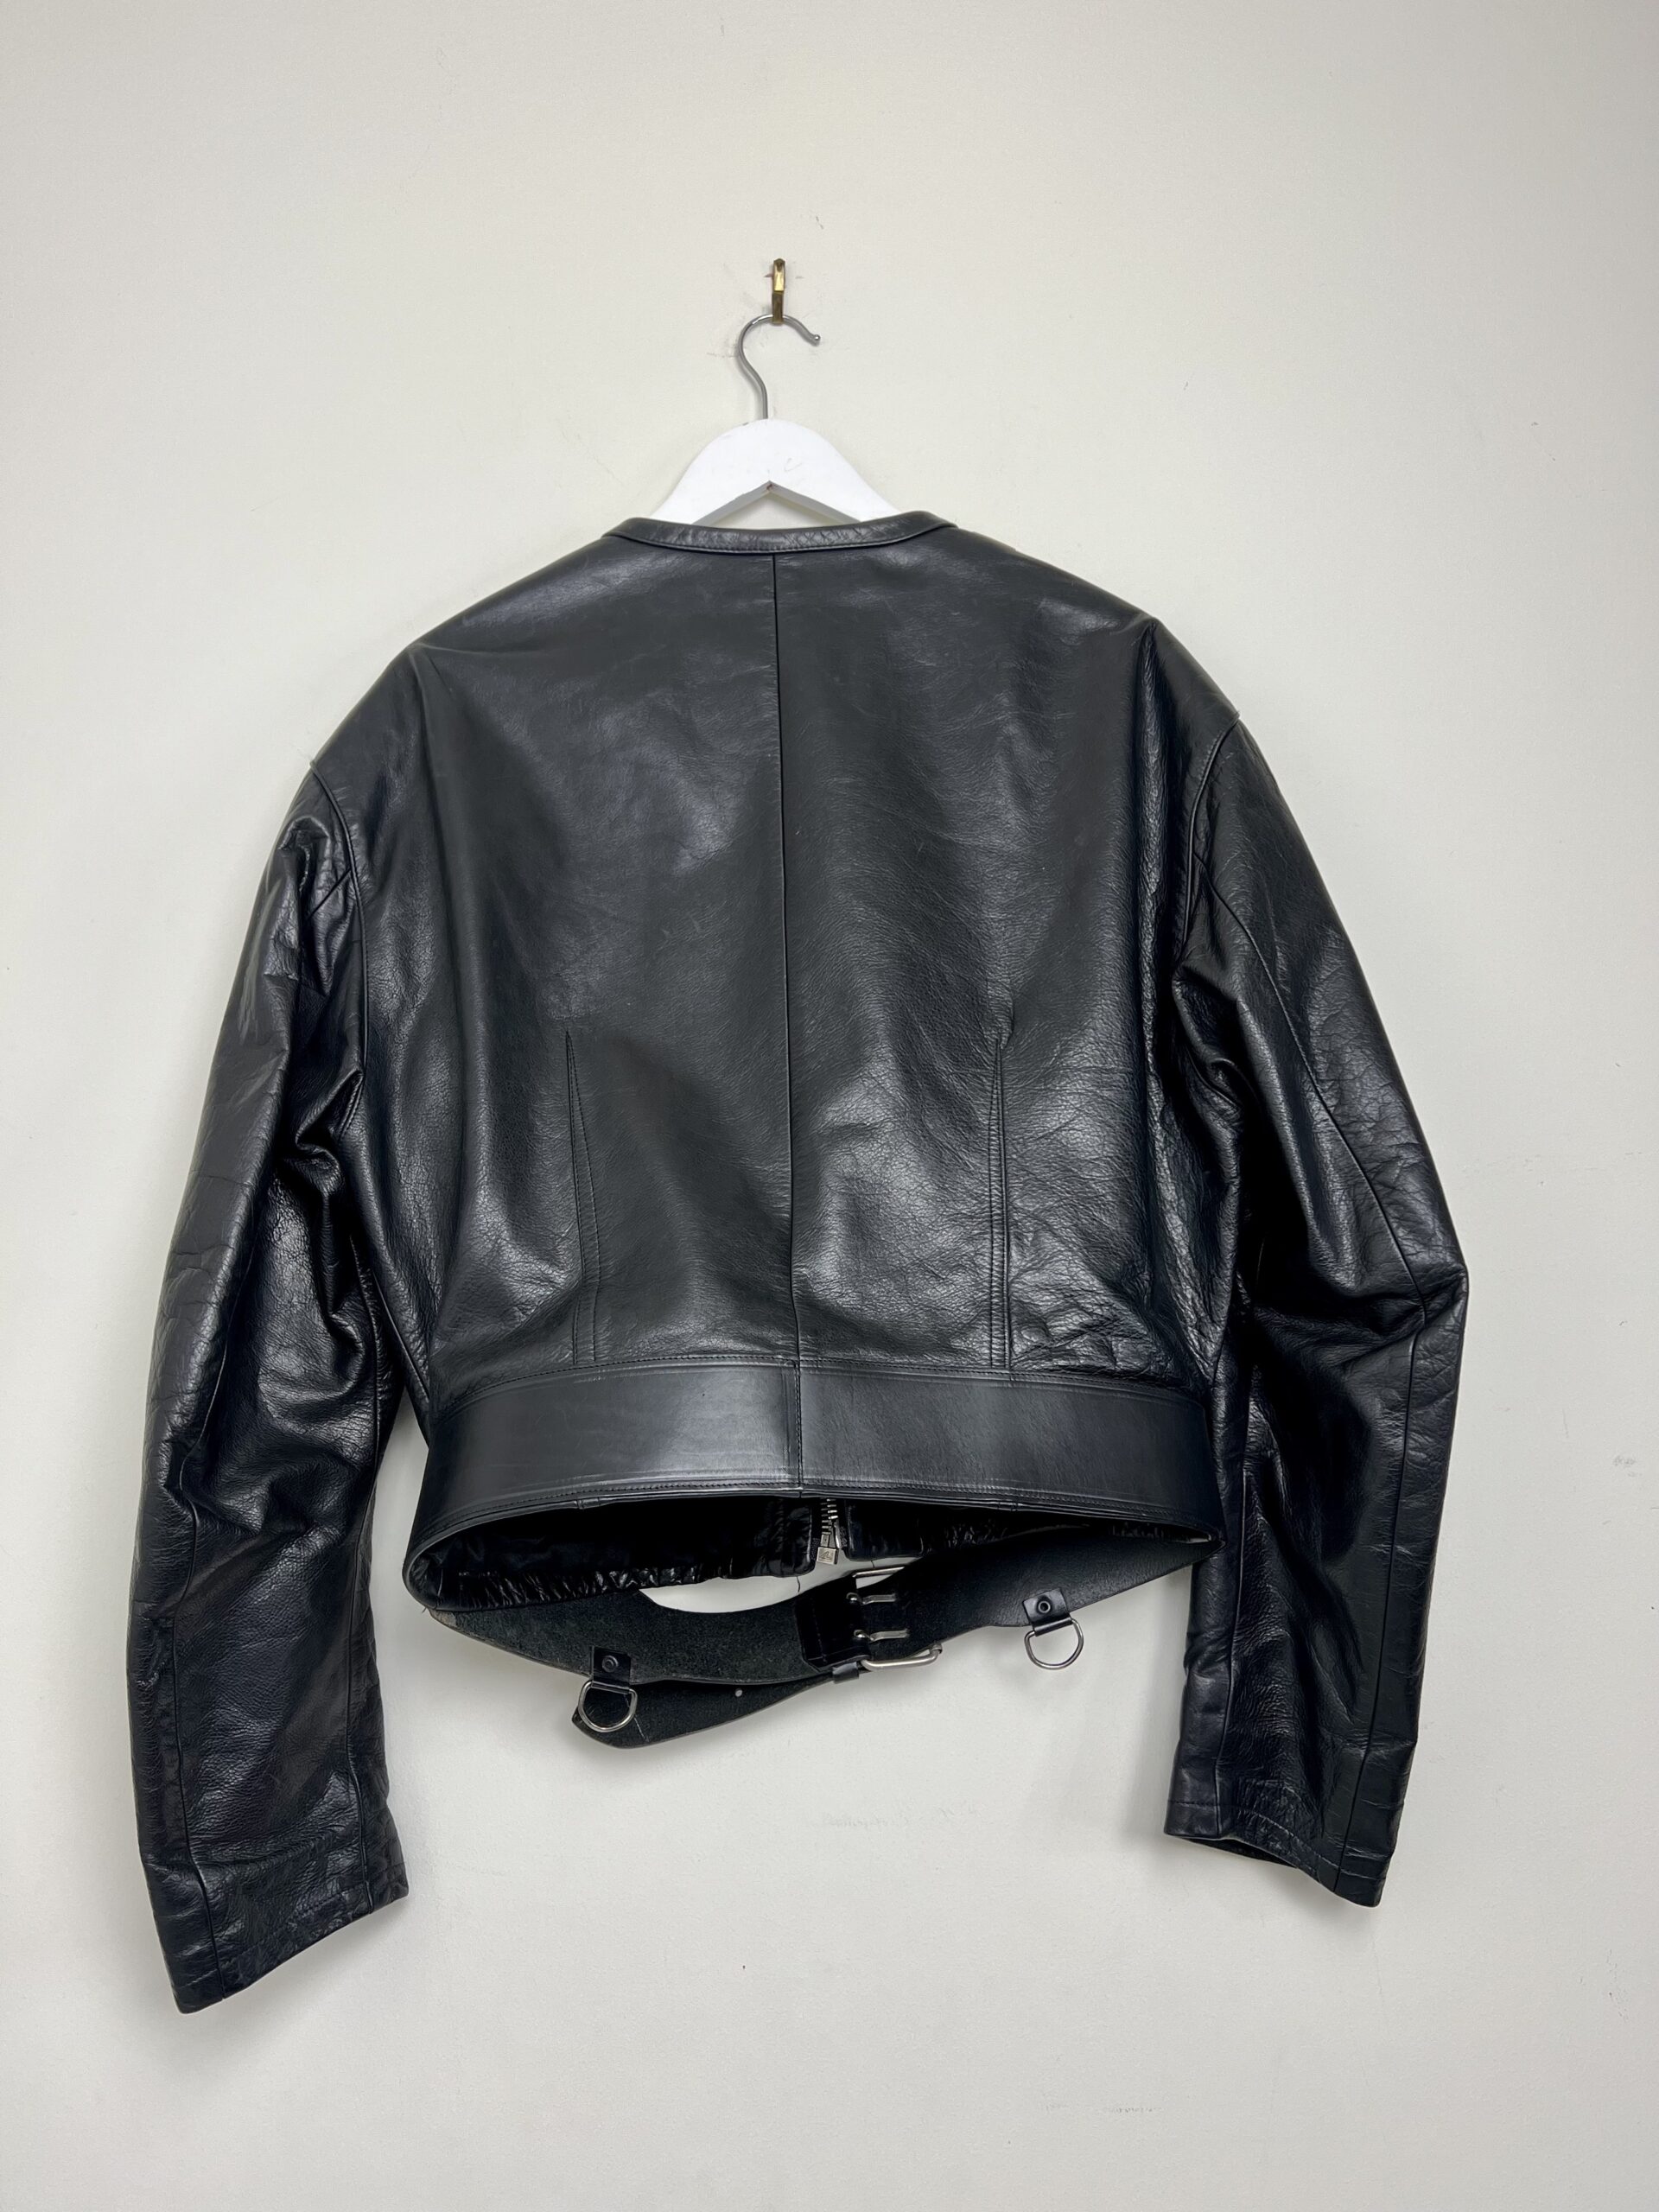 Calugi E Gianelli Studded Leather Biker Jacket - Rellik